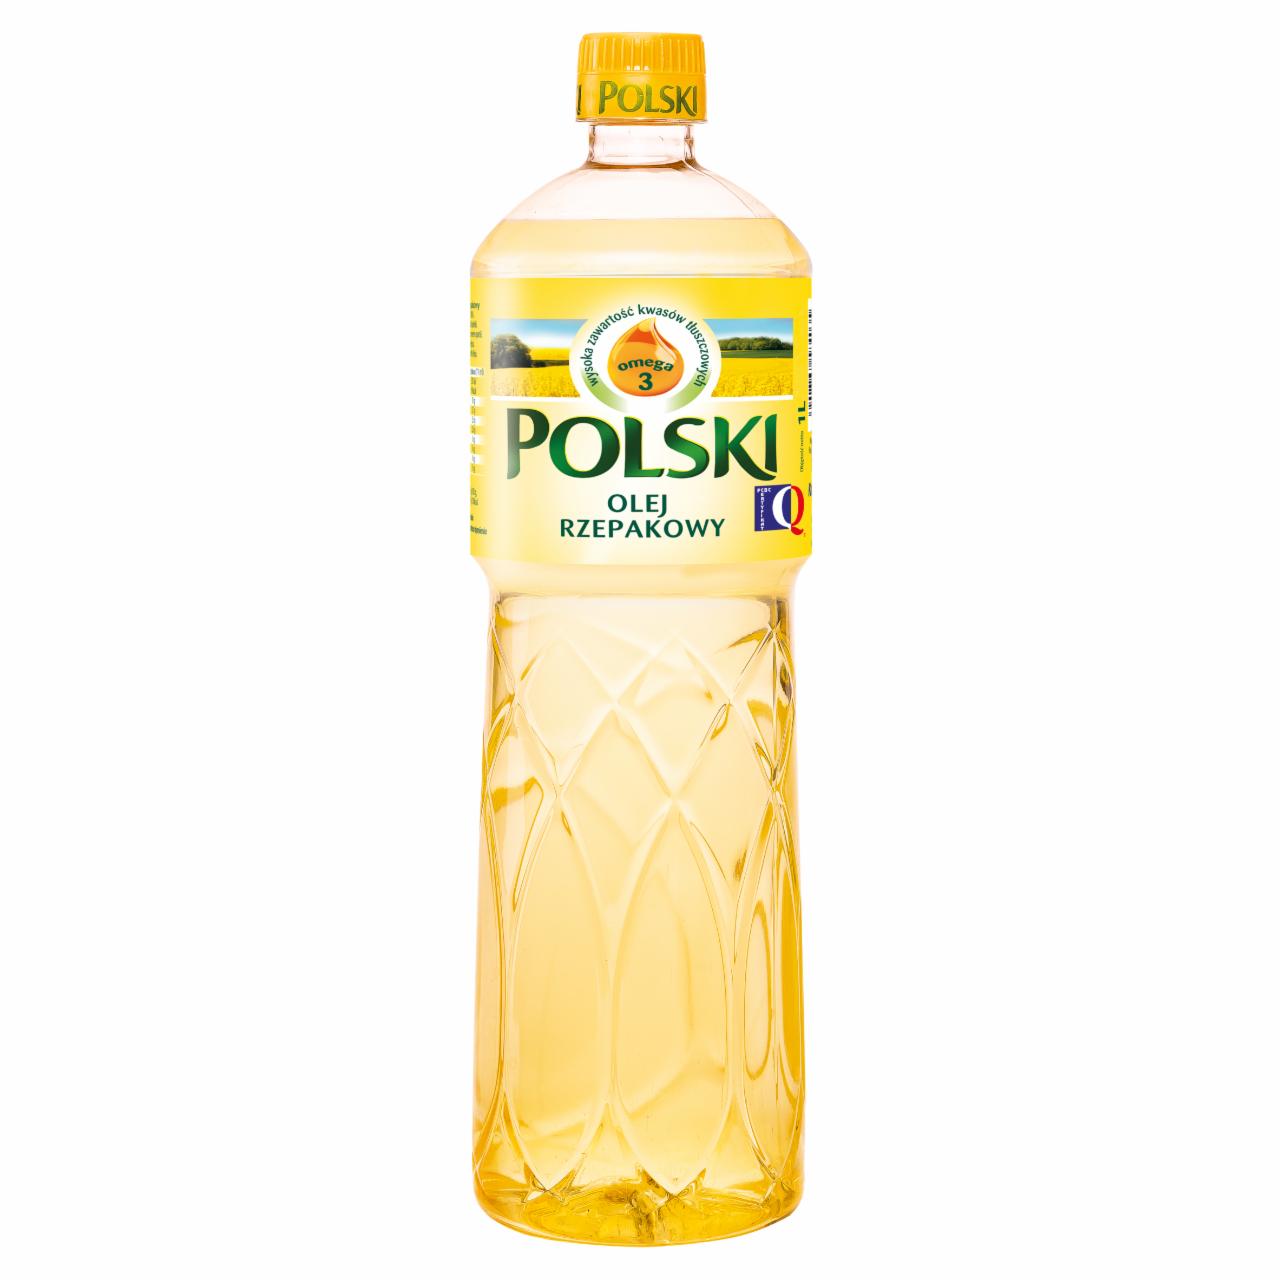 Zdjęcia - Polski olej rzepakowy 1 l